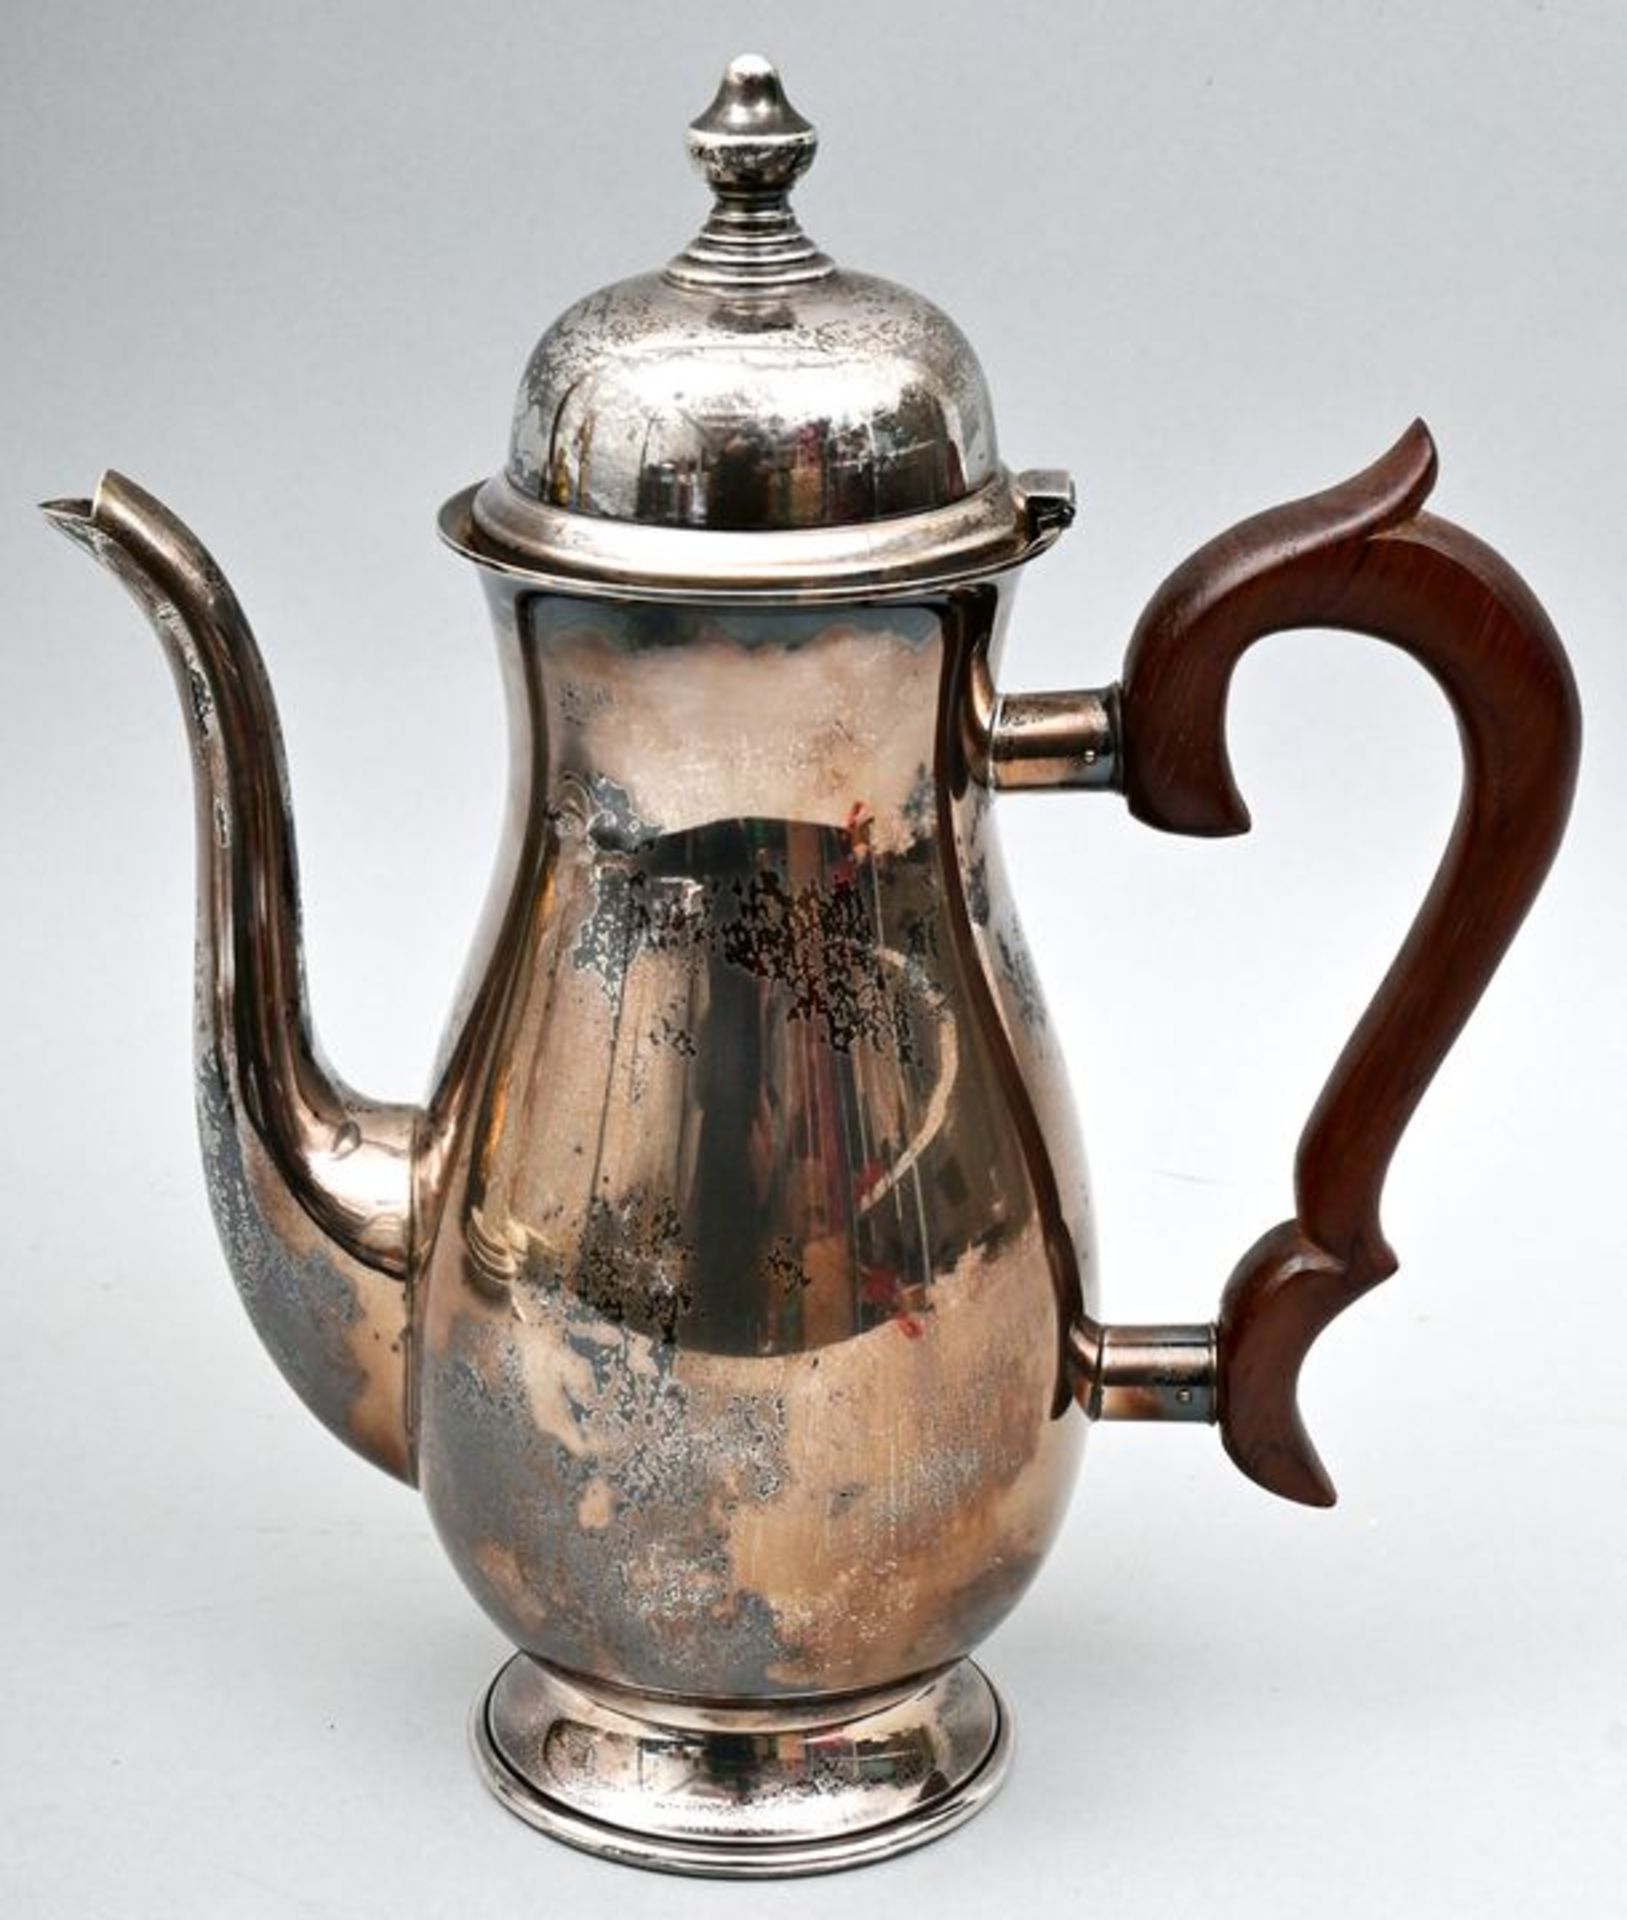 Silber-Kaffeekanne / sterling silver coffee pot